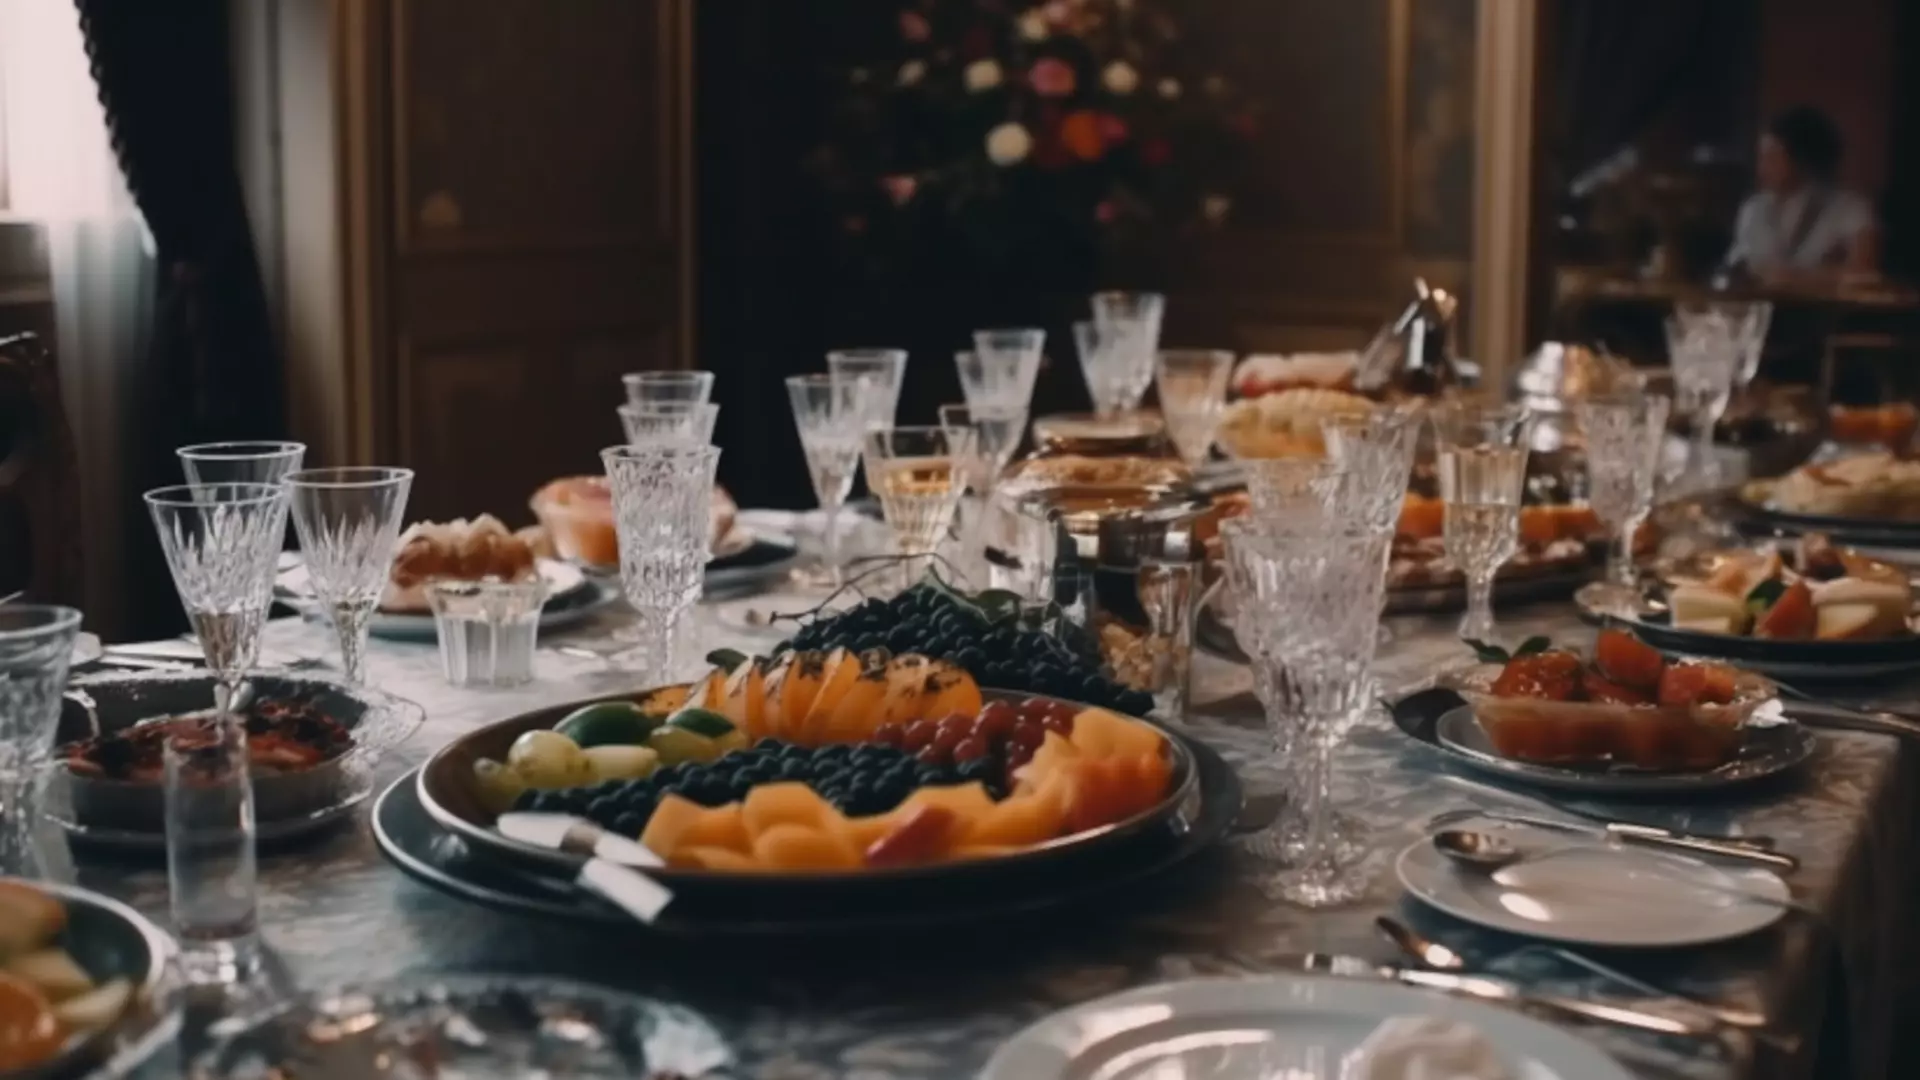 Югорчанам рассказали о необычных и простых закусках к новогоднему столу